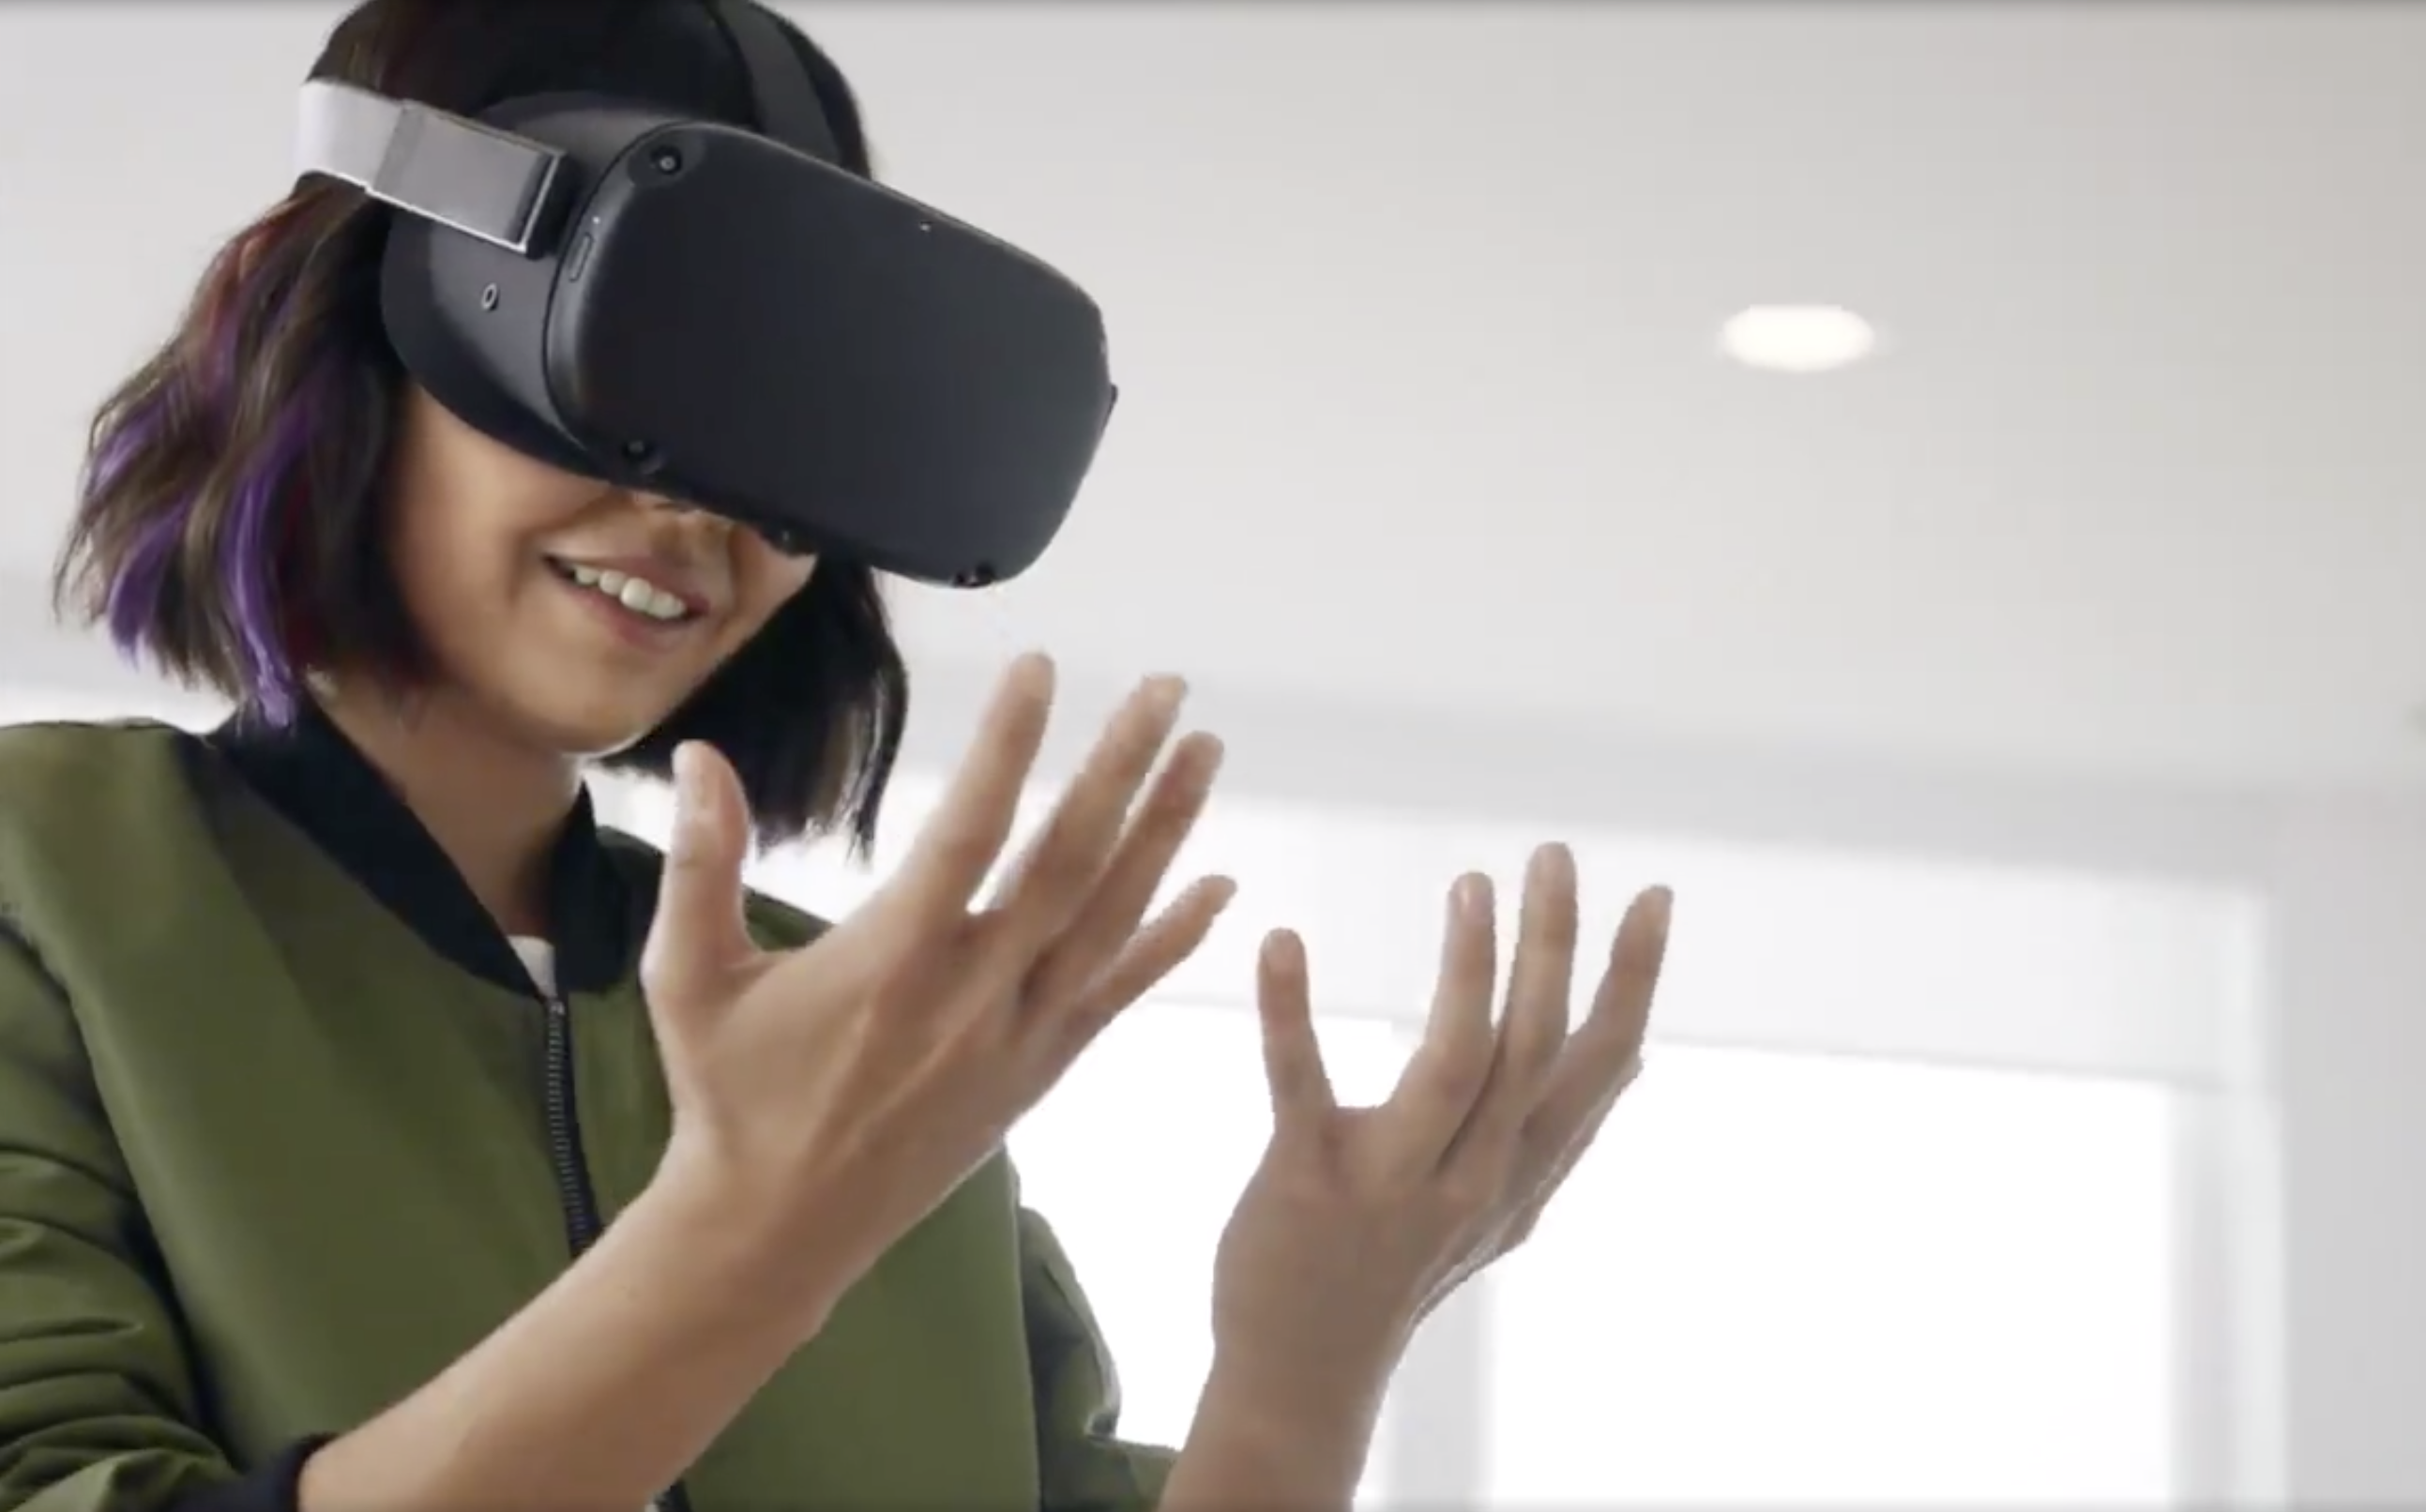 Oculus meta quest vr. Виртуальная реальность Окулус. Очки виртуальной реальности Окулус квест 2. VR очки Oculus Quest. Oculus Quest виртуальная реальность.